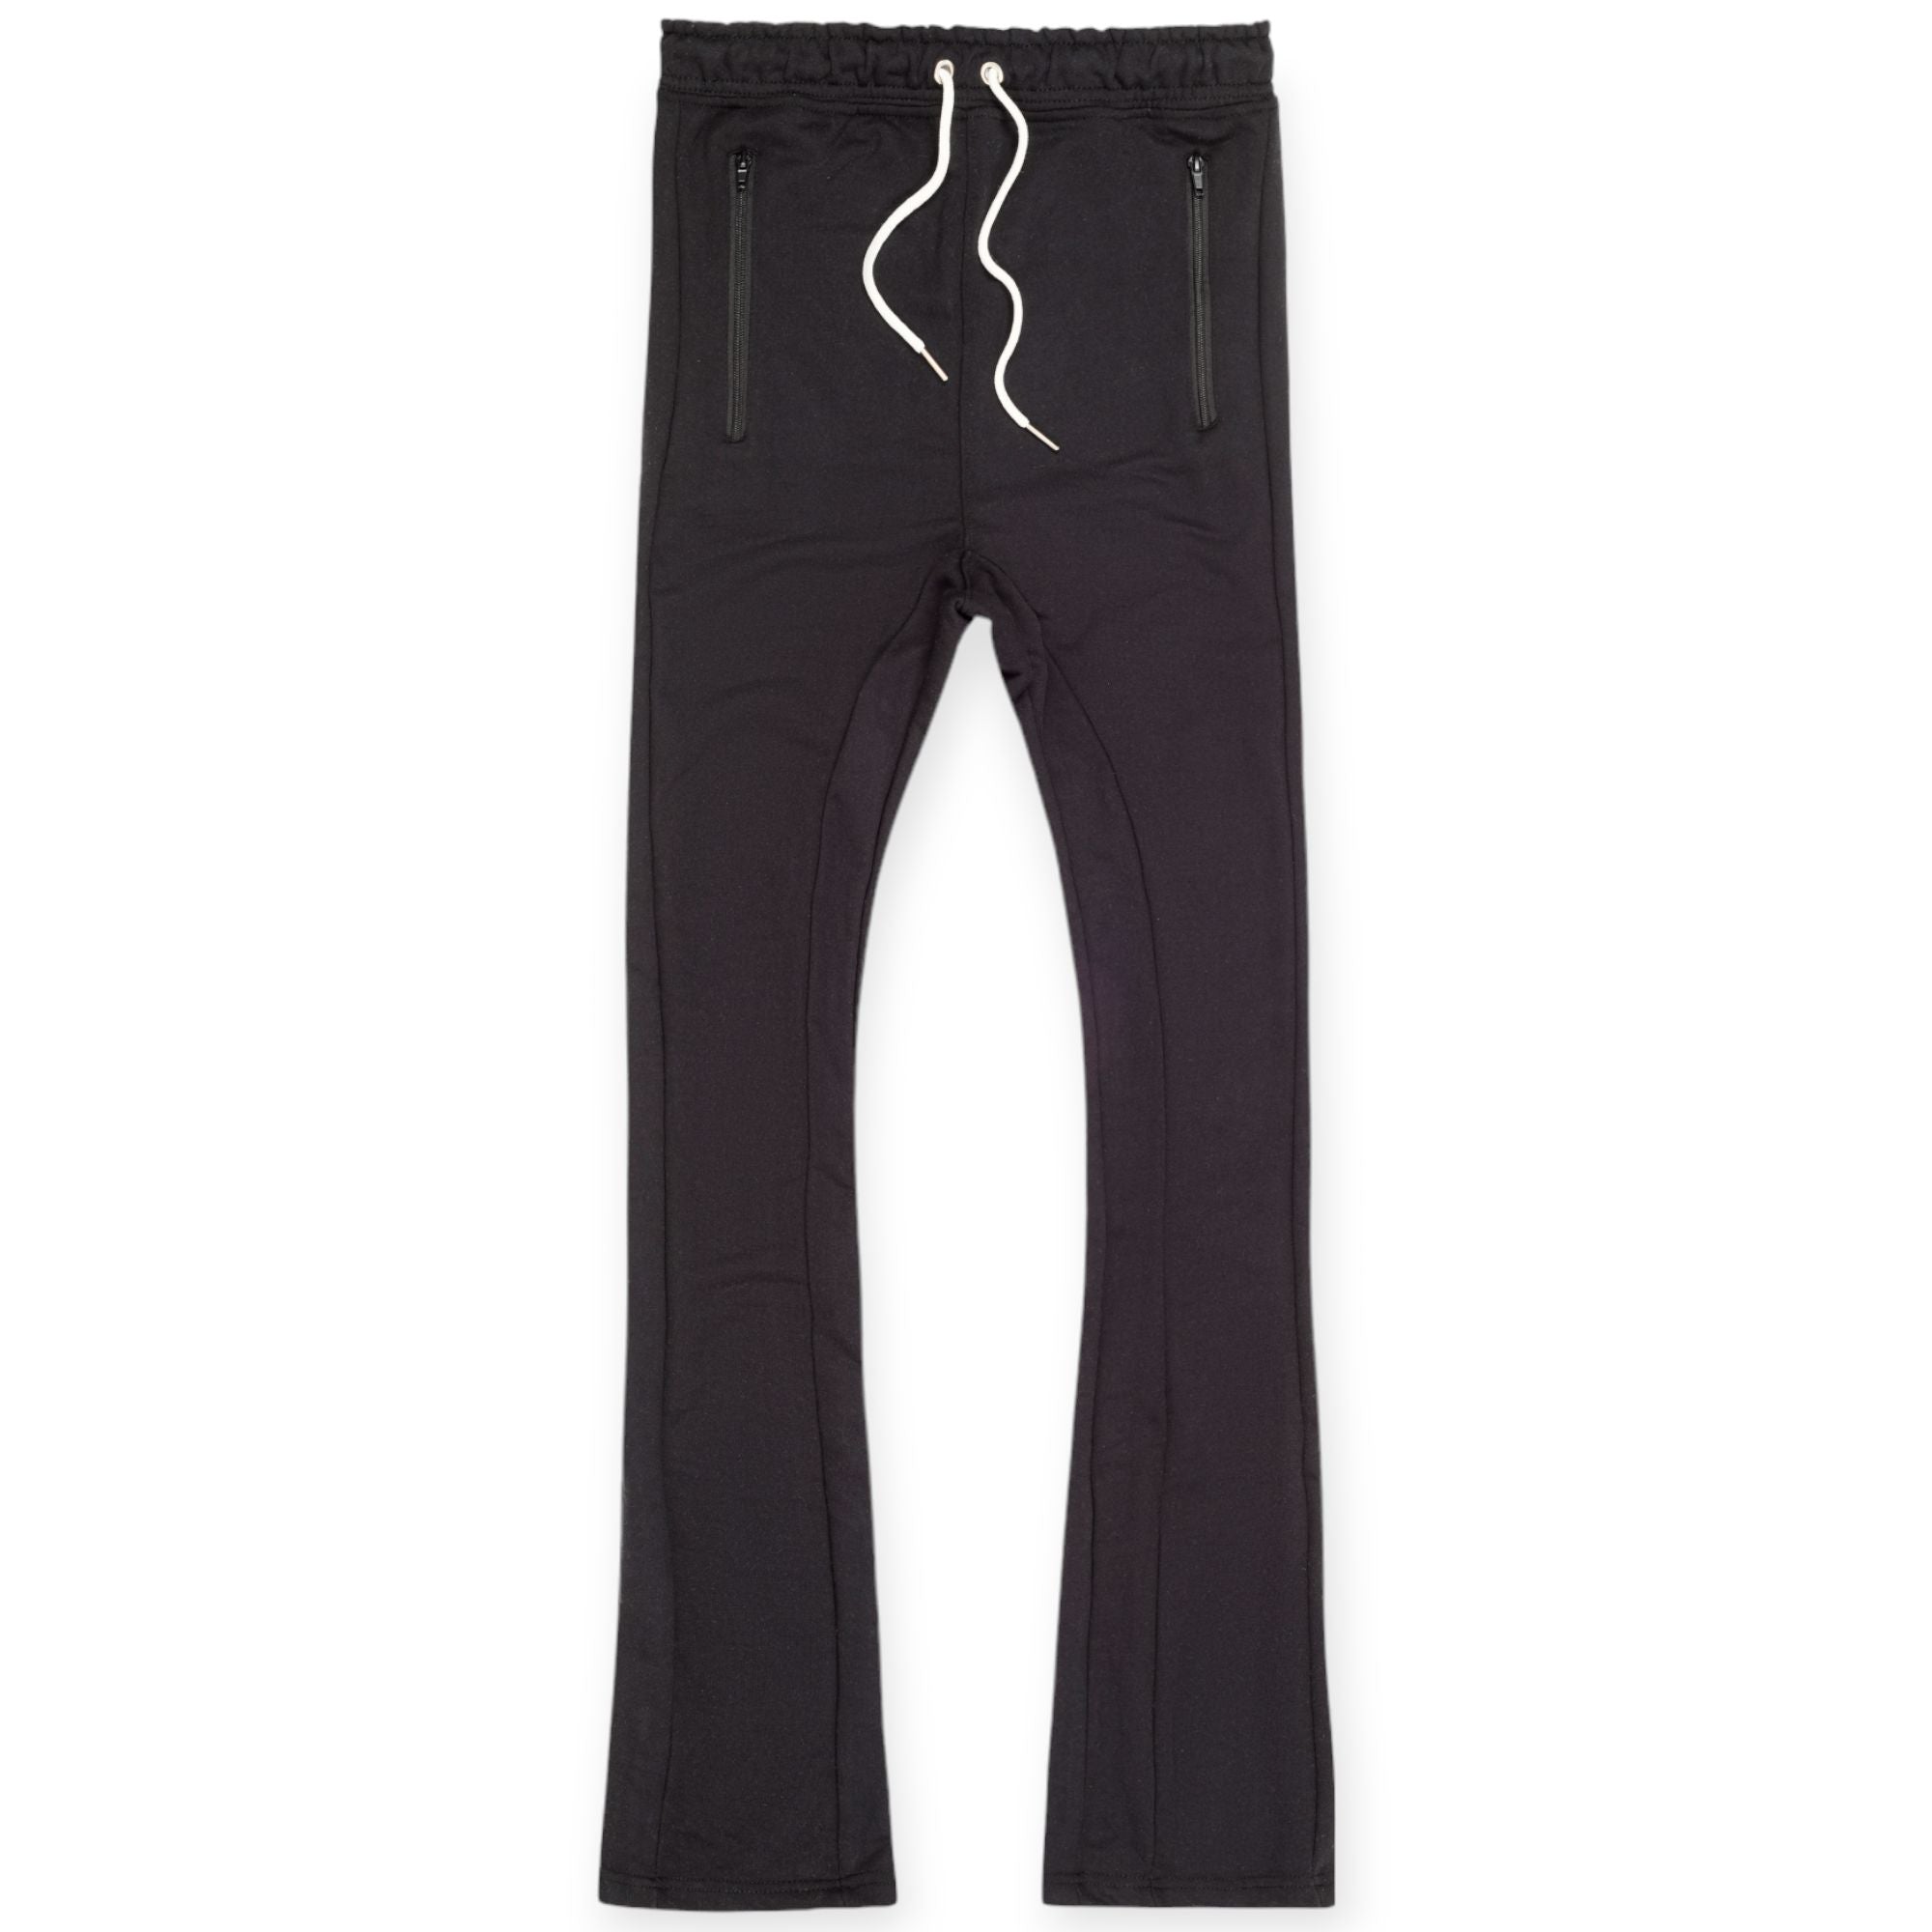 Nexus Clothing Men Basic Flare Stacked Sweatpants French Terry Joggers (Black)-Black-XXX-Large-Nexus Clothing